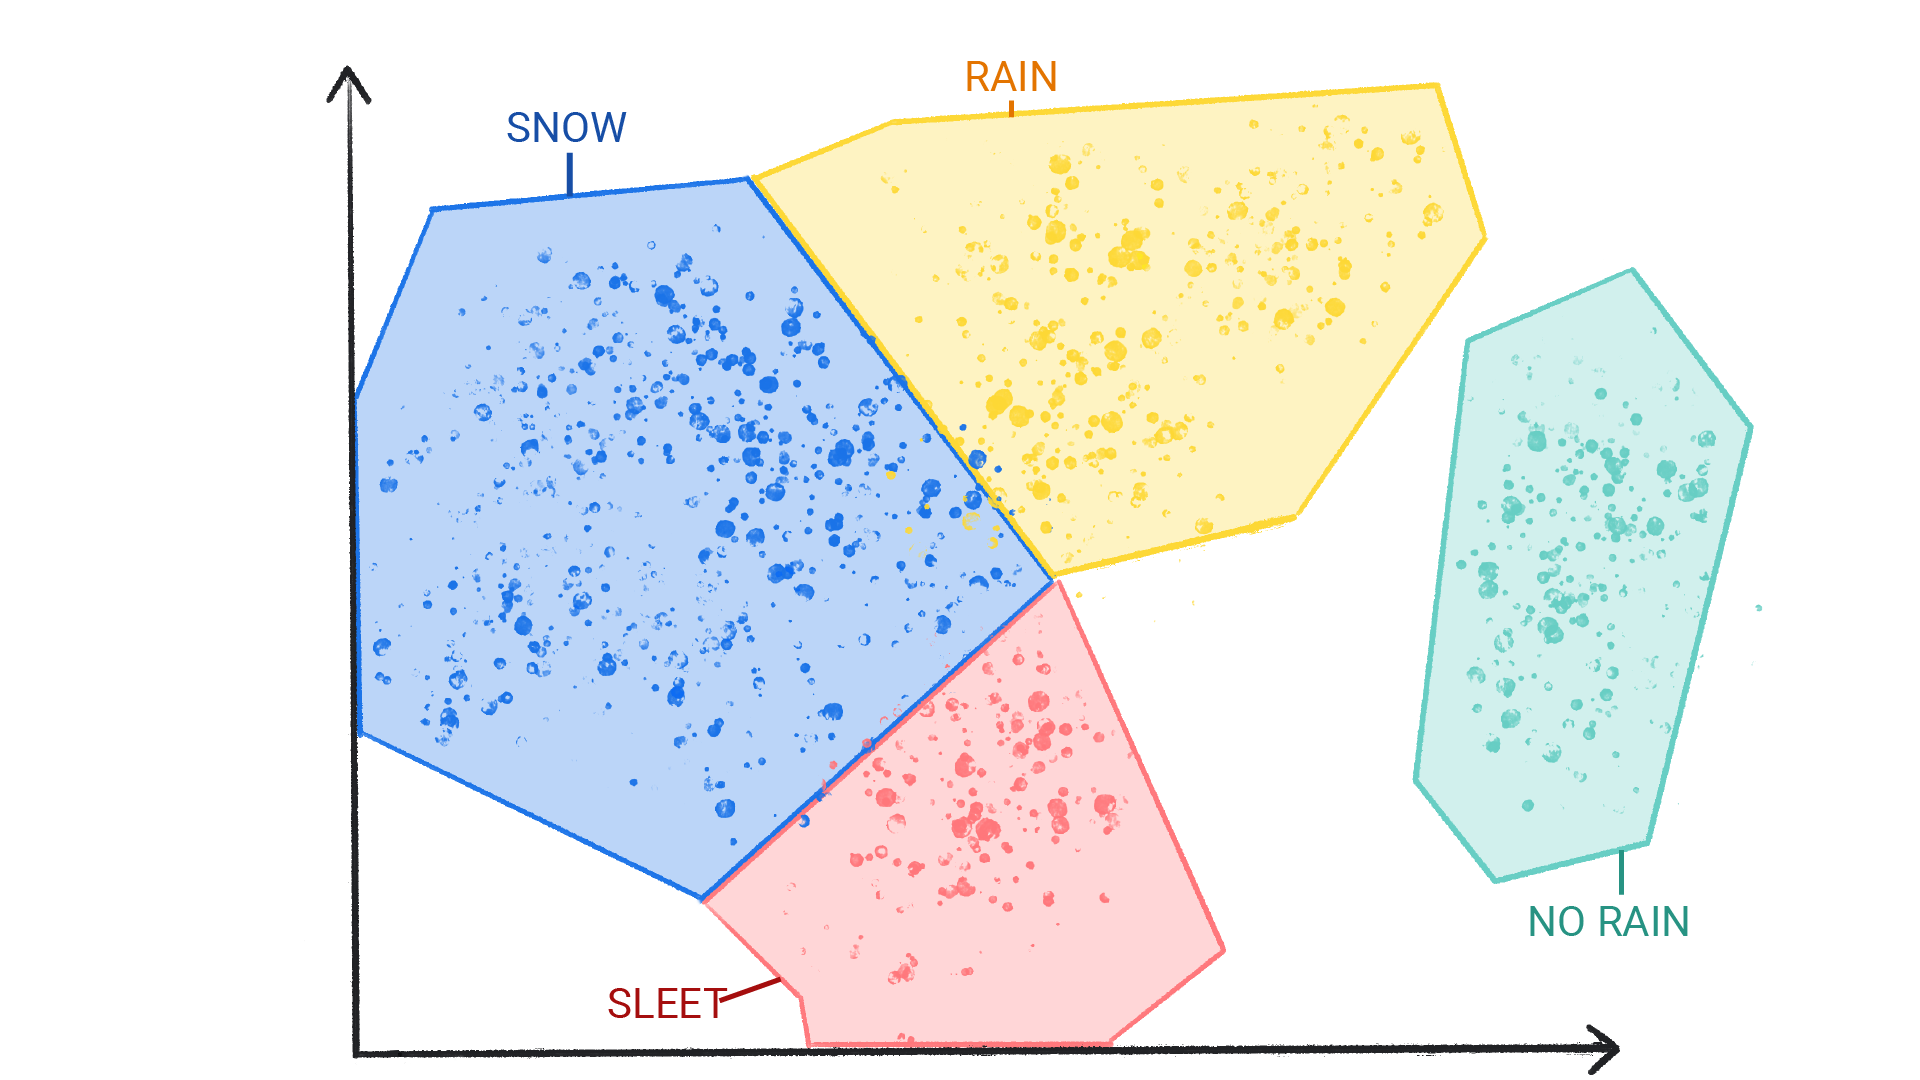 Изображение, показывающее цветные точки в группах, помеченных как снег, дождь, град и отсутствие дождя, заключенные в фигуру и граничащие друг с другом.